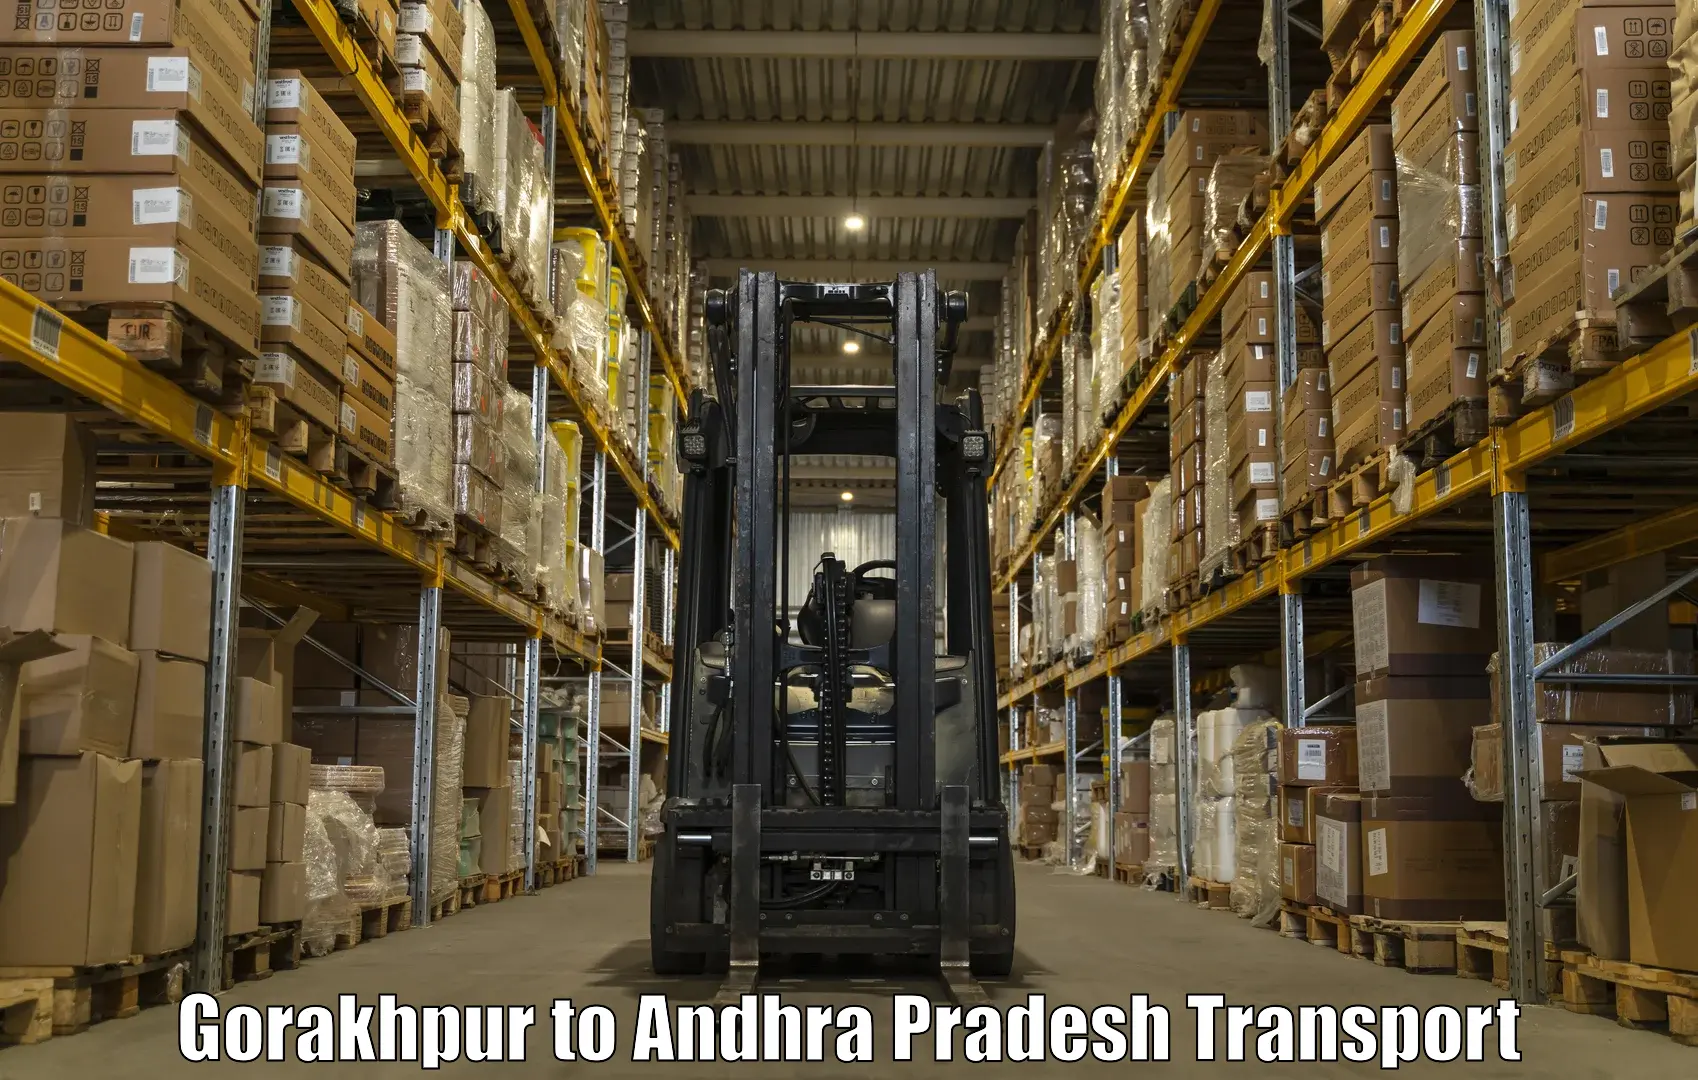 Shipping partner in Gorakhpur to Yerragondapalem